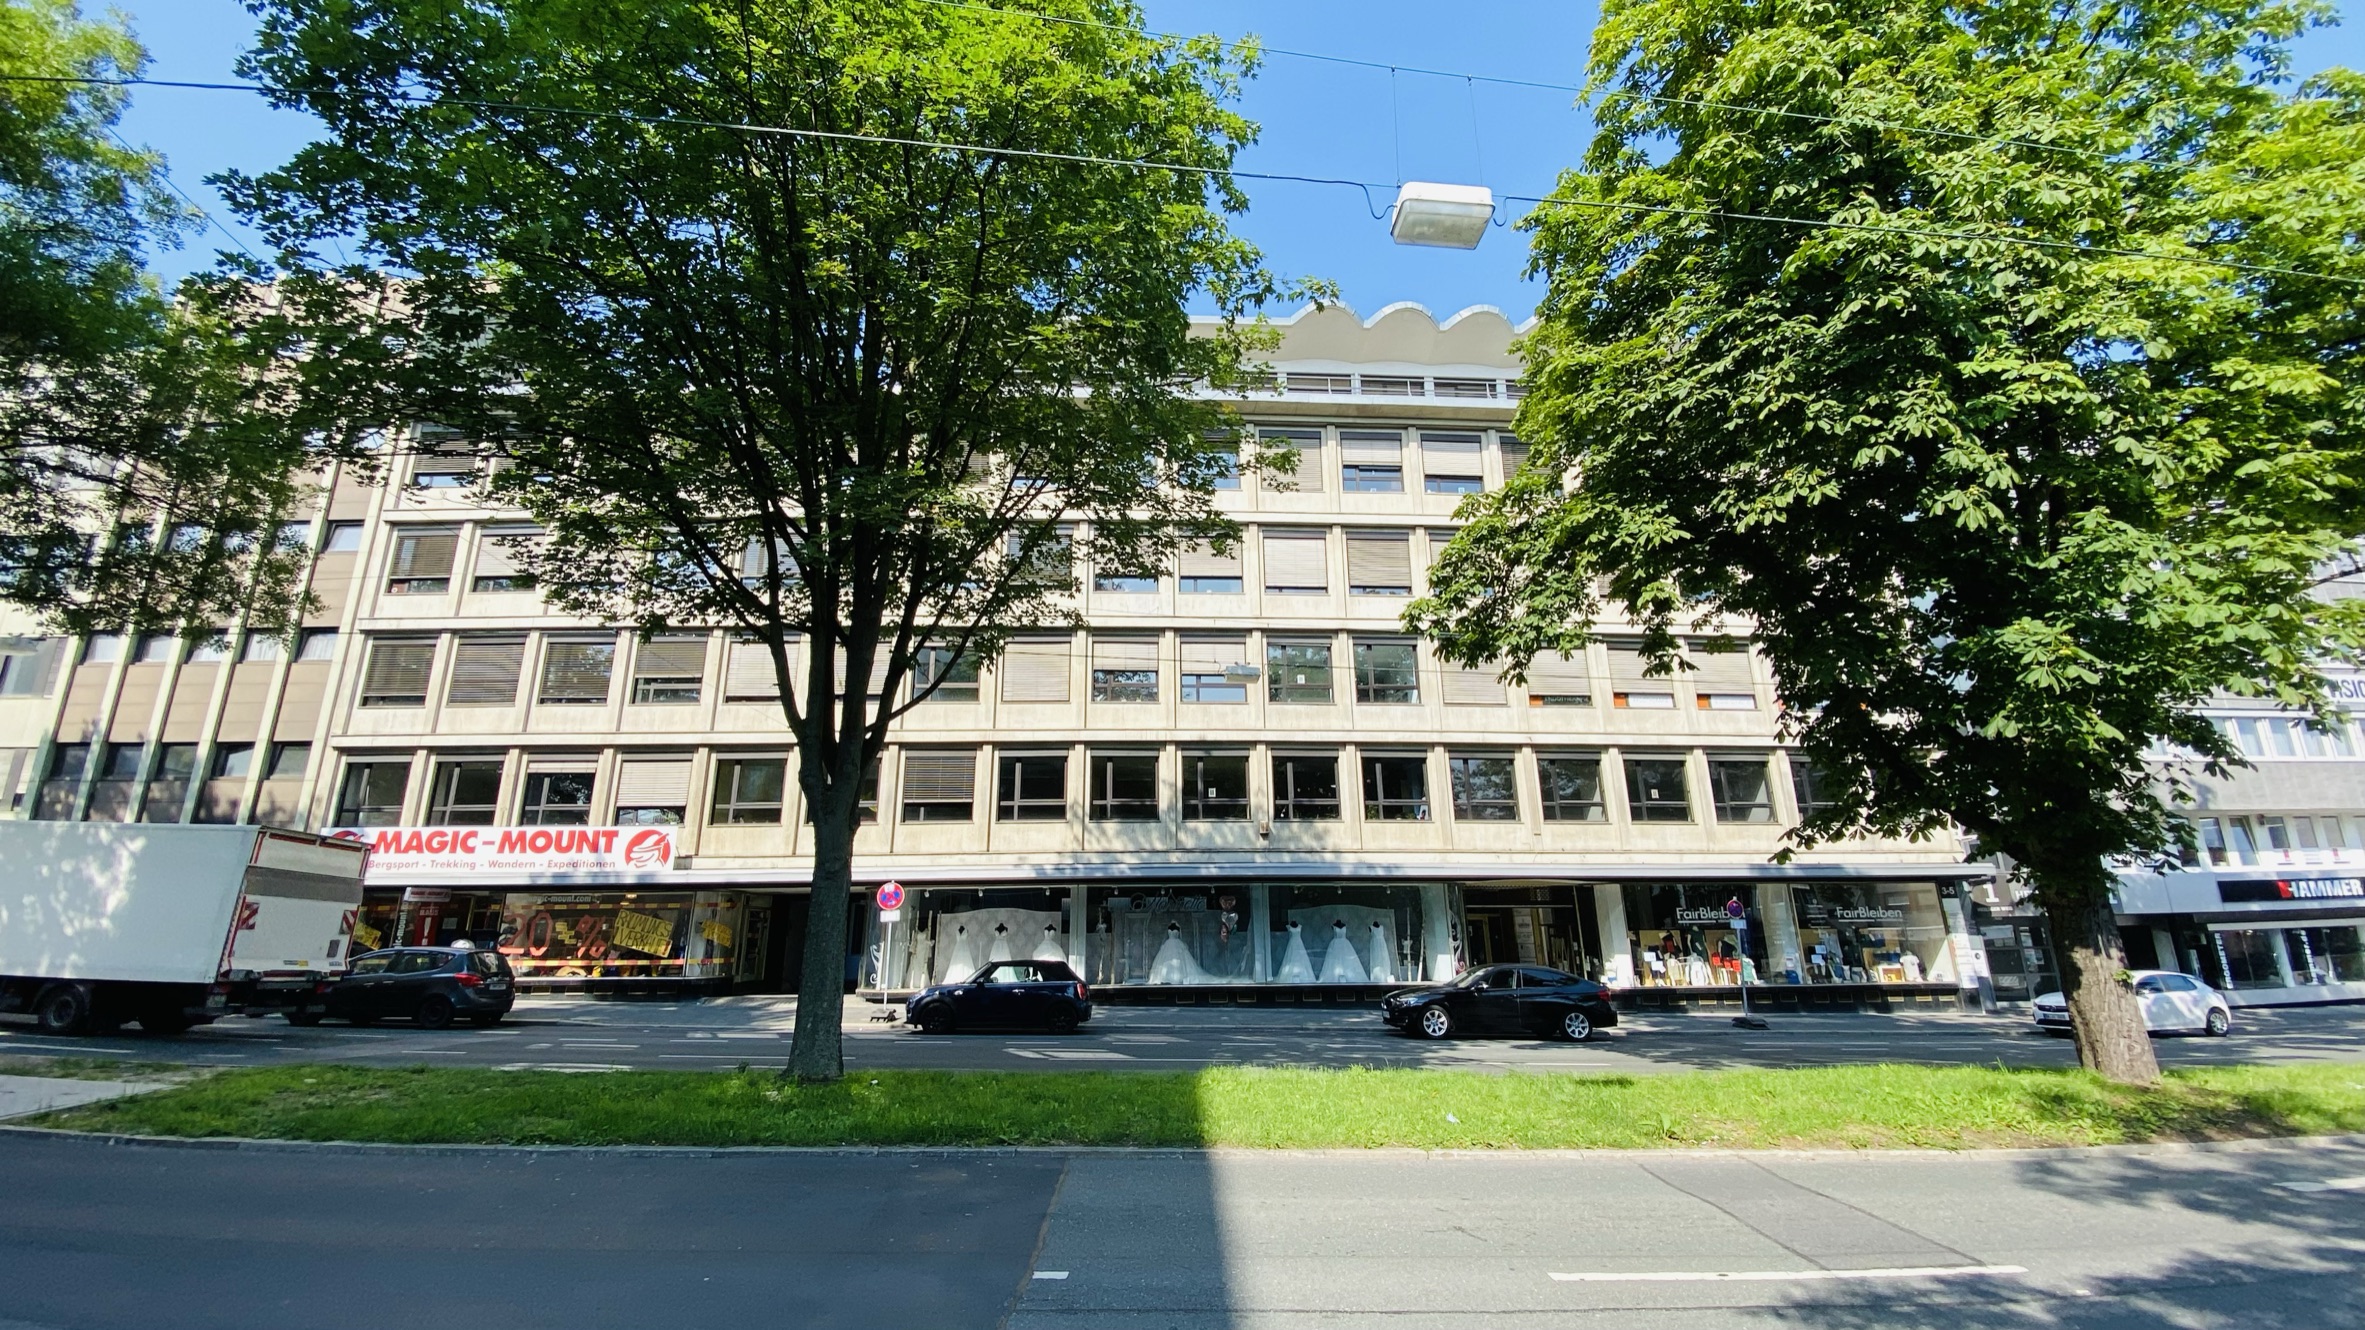 *PROVISIONSFREI* ca. 146 m² Büro-/Praxisfläche in der Dortmunder Innenstadt zu vermieten!